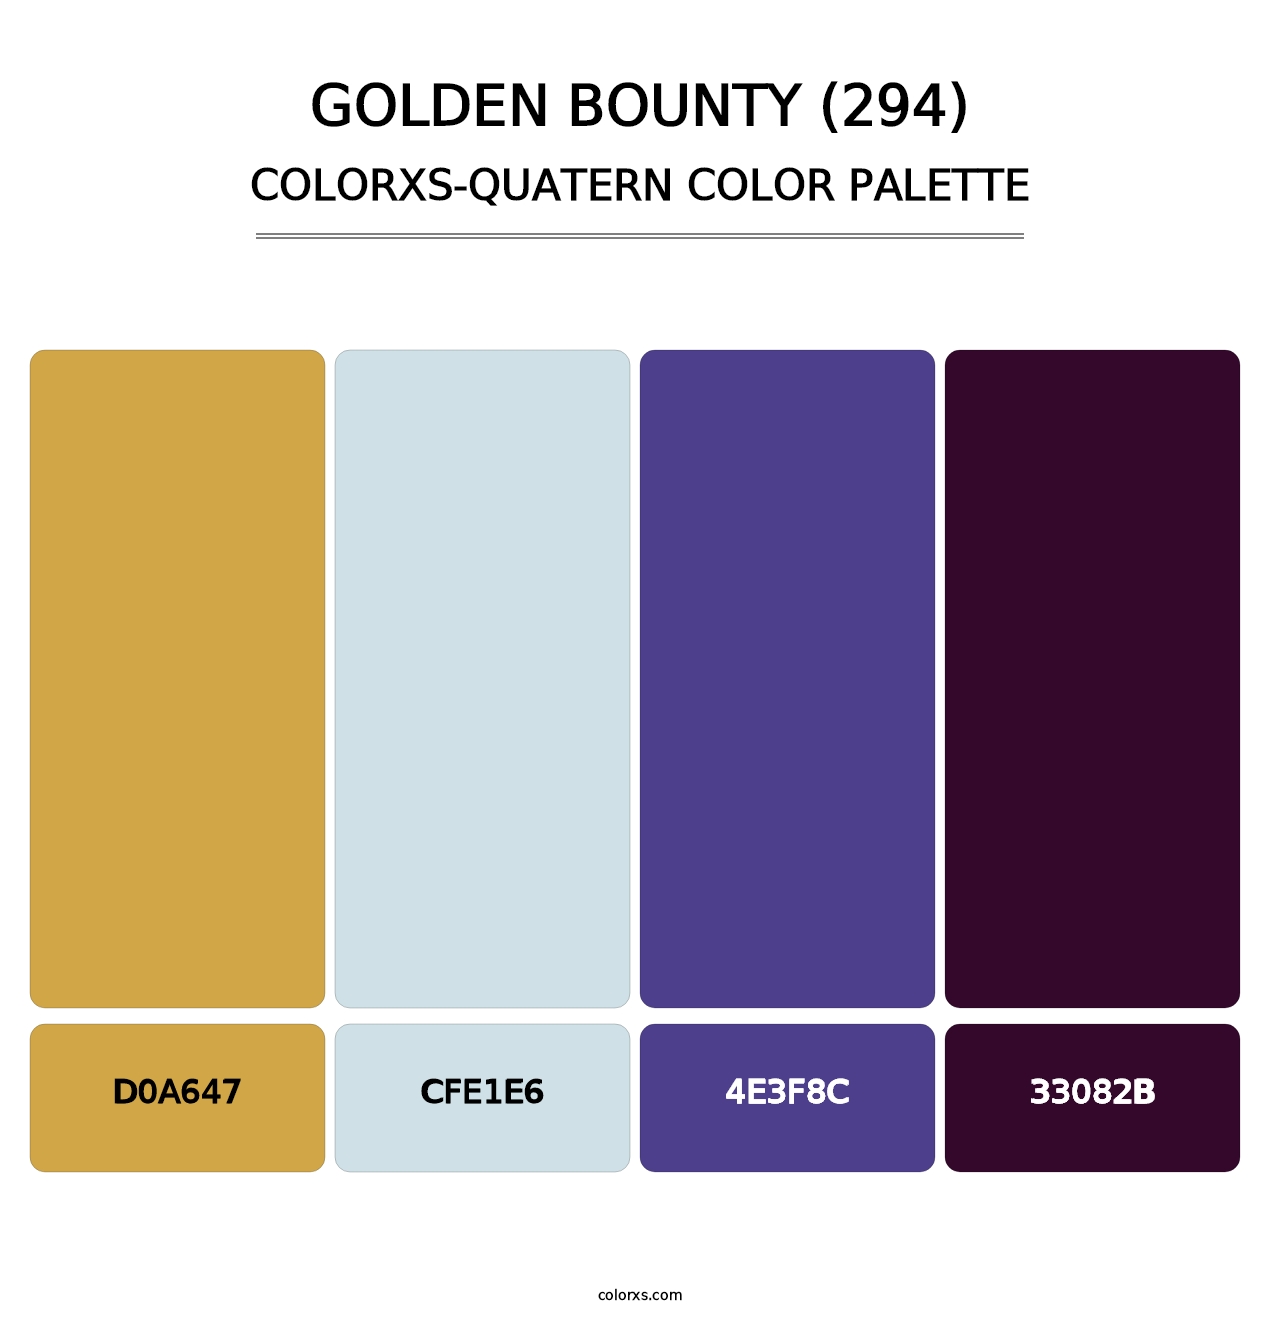 Golden Bounty (294) - Colorxs Quatern Palette